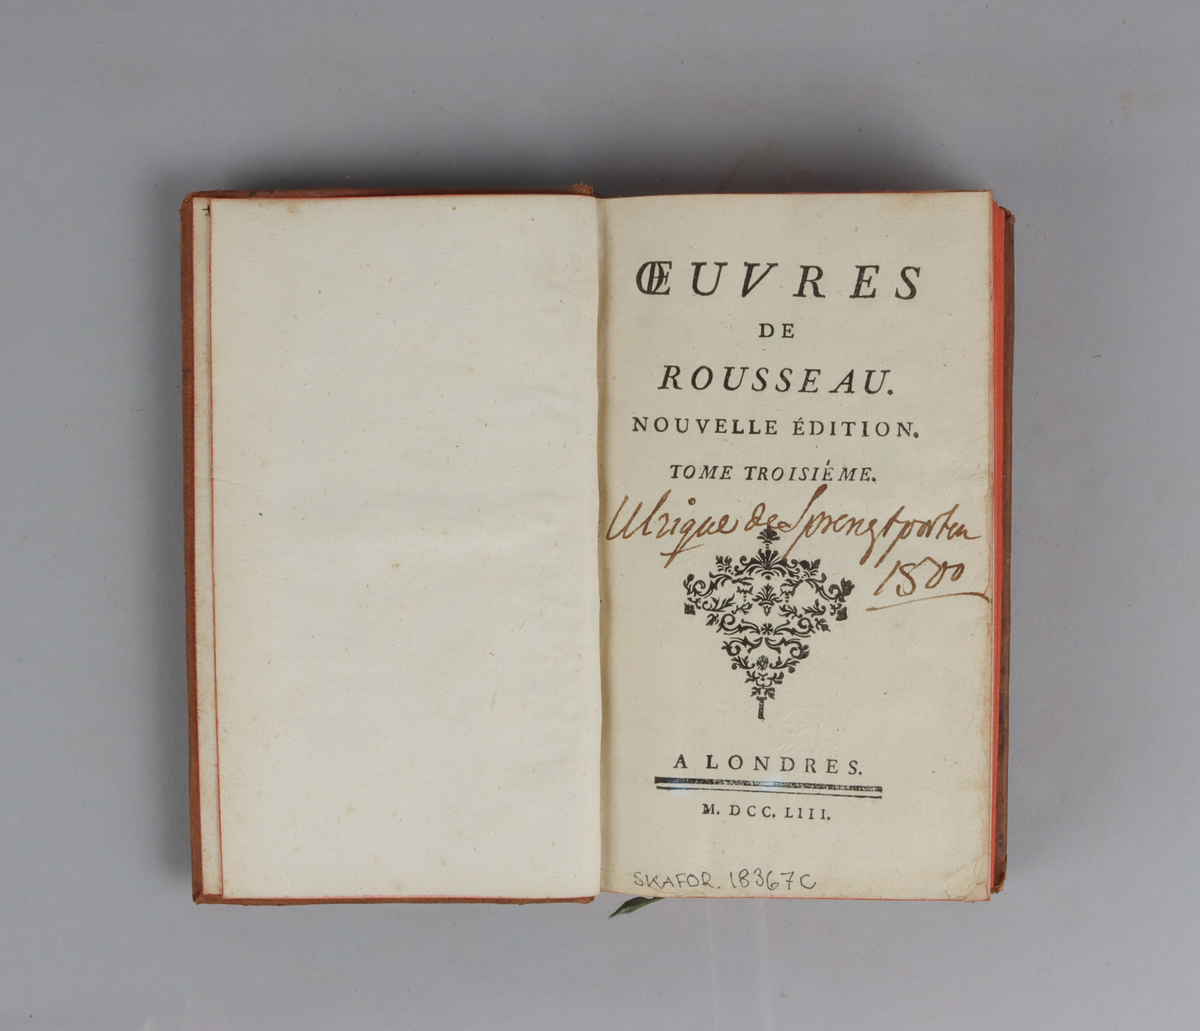 Bok bunden i helfranskt band, pärm i ljust mönstrat läder. Rygg med guldpräglingar och fem upphöjda bind, rött snitt samt dekorerad med stiliserade blommor och musslor. Titelsida "Oeuvres de Rousseau", nouvelle édition, del 3.